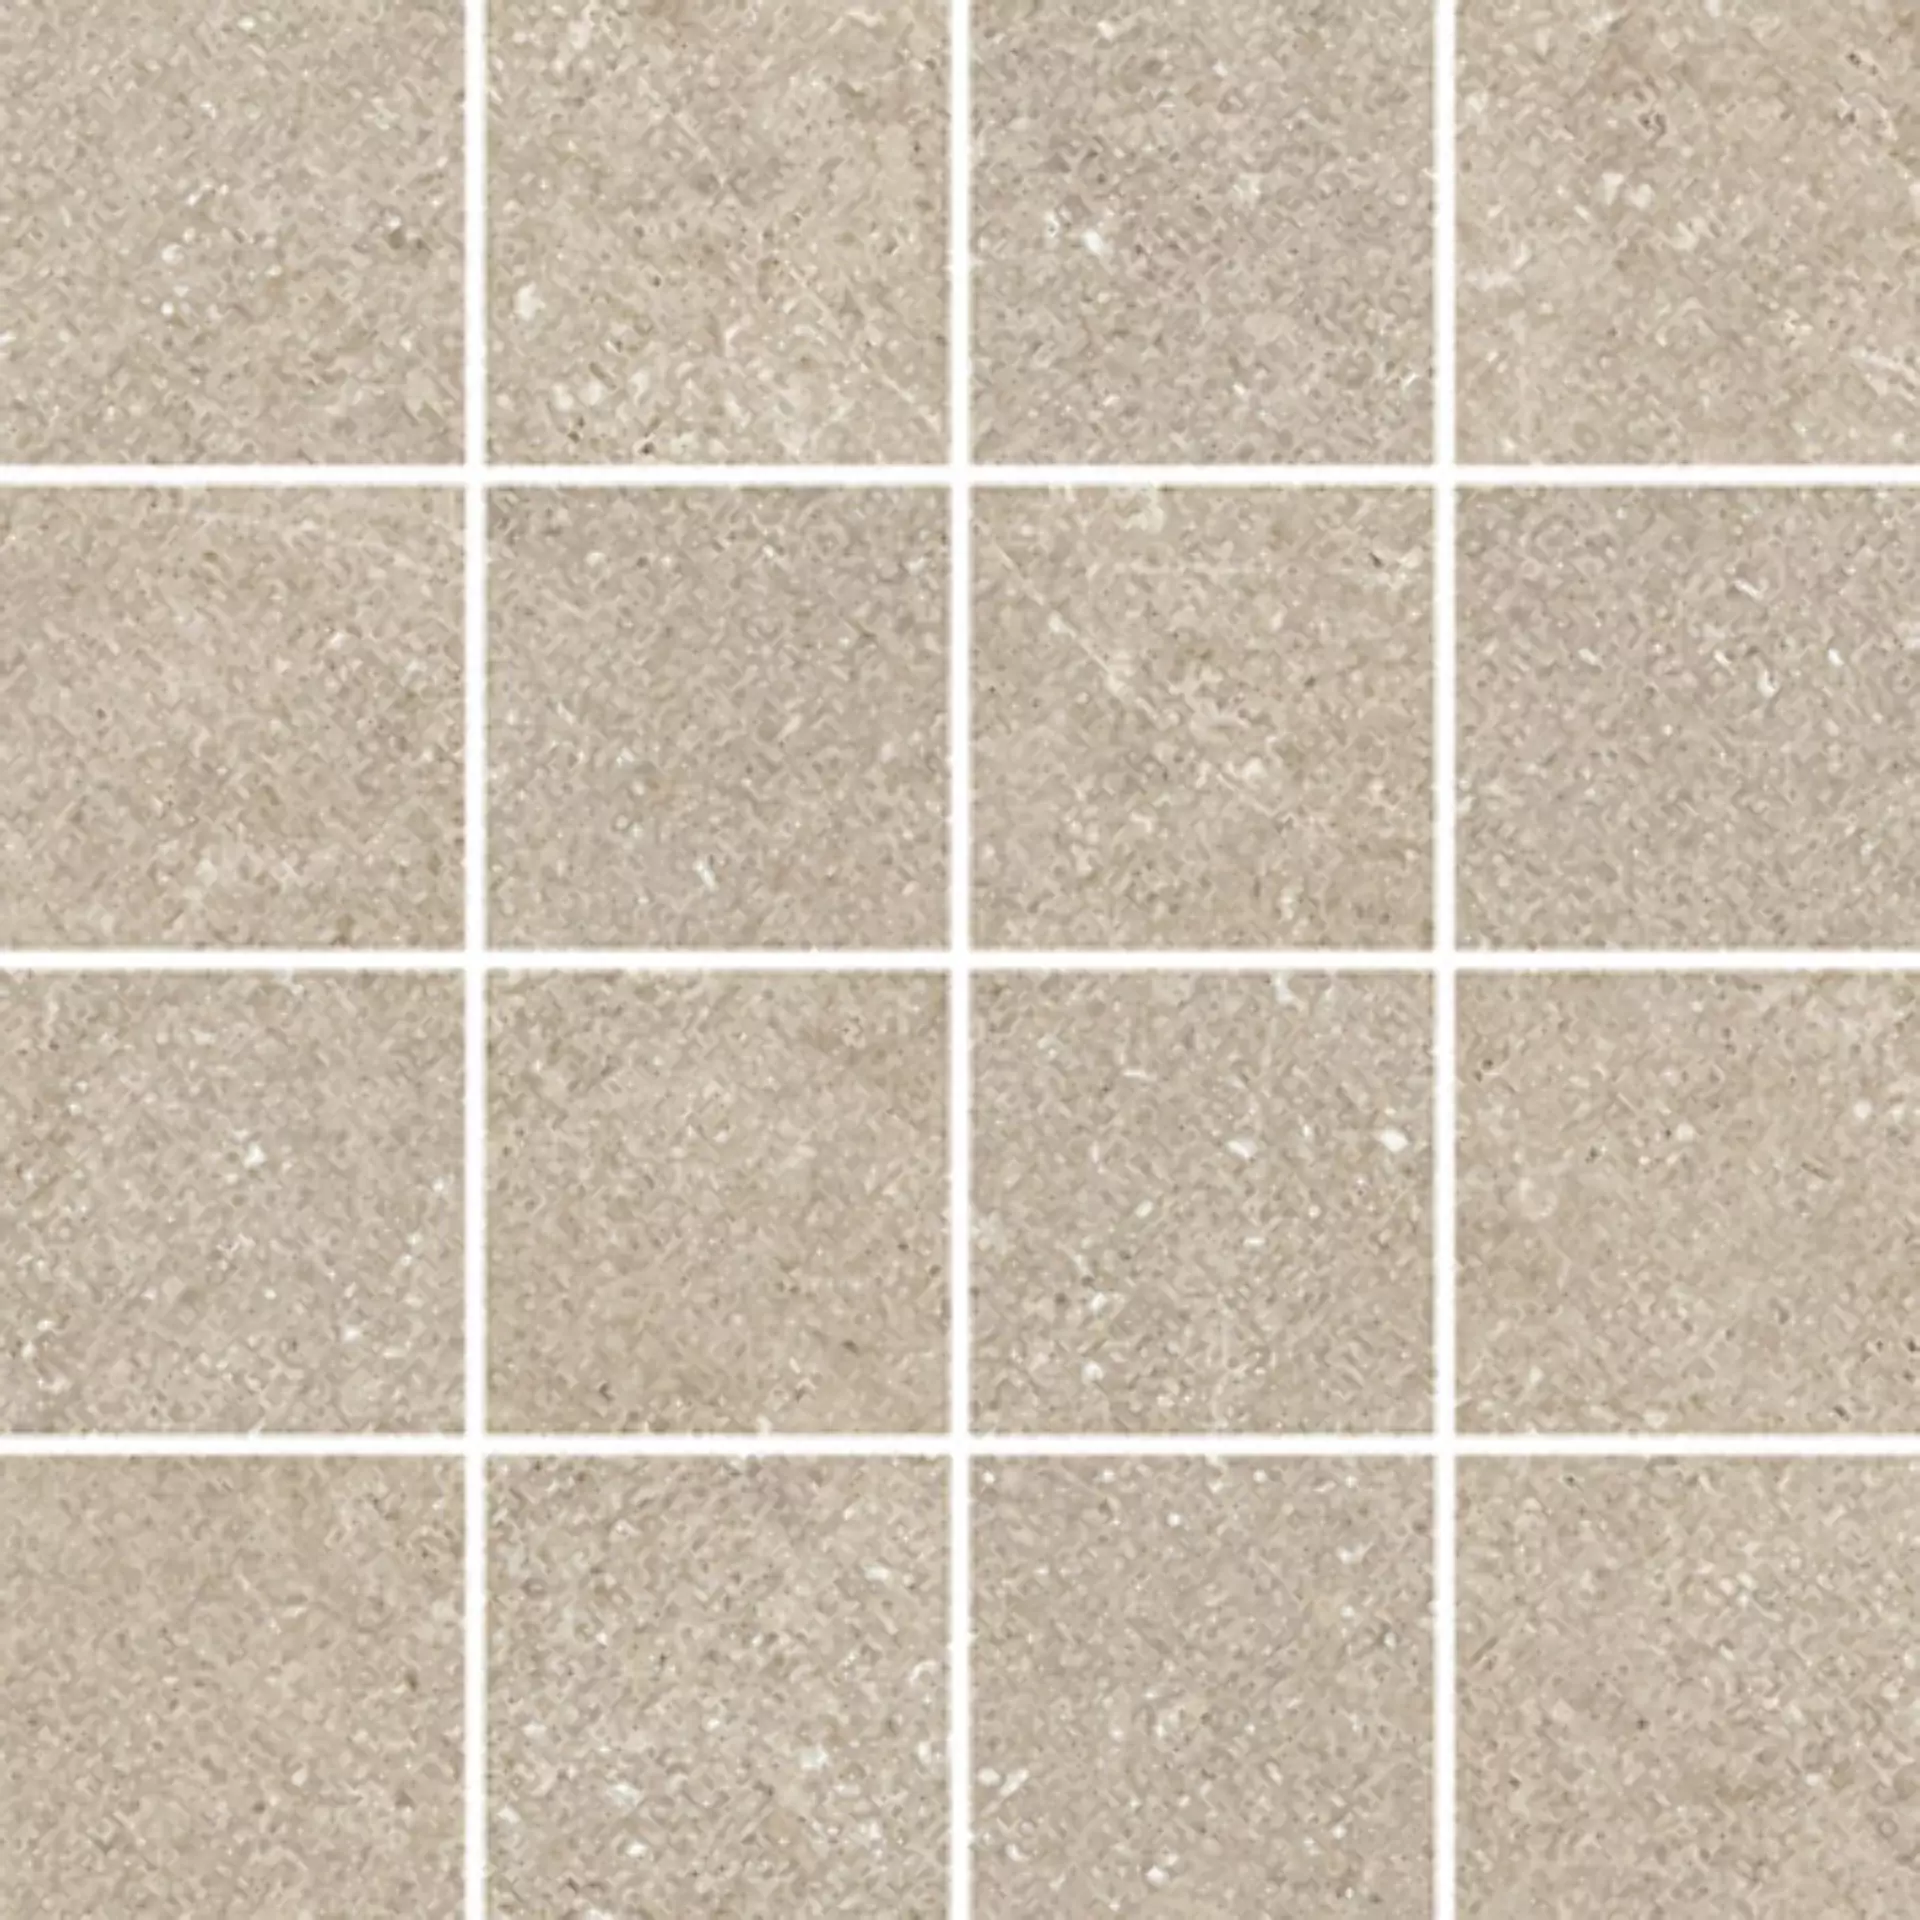 Wandfliese,Bodenfliese Villeroy & Boch Lucca Sand Matt Sand 2013-LS70 matt 7,5x7,5cm Mosaik (7,5x7,5) rektifiziert 9mm